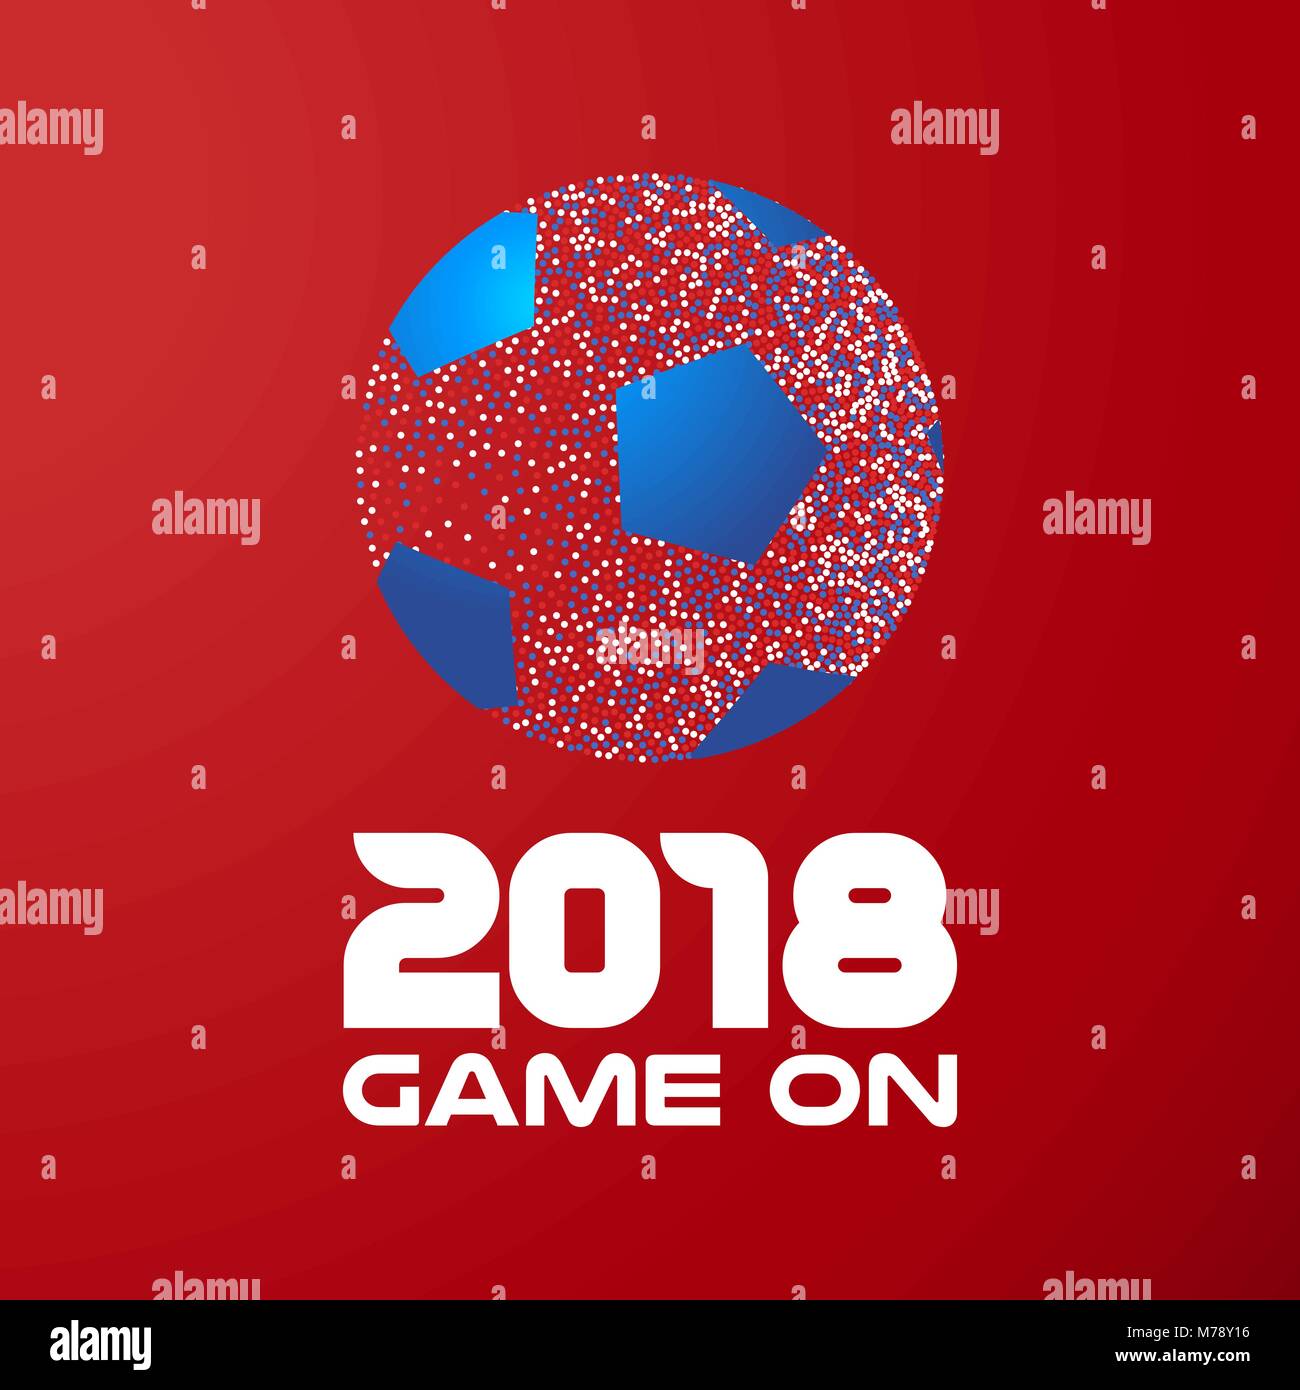 Fußball der bunte Punkte auf rot Farbe Hintergrund mit der Typografie 2018 vorgenommen wurden. Ideal für Fußball oder eine Sportveranstaltung. EPS 10 Vektor. Stock Vektor